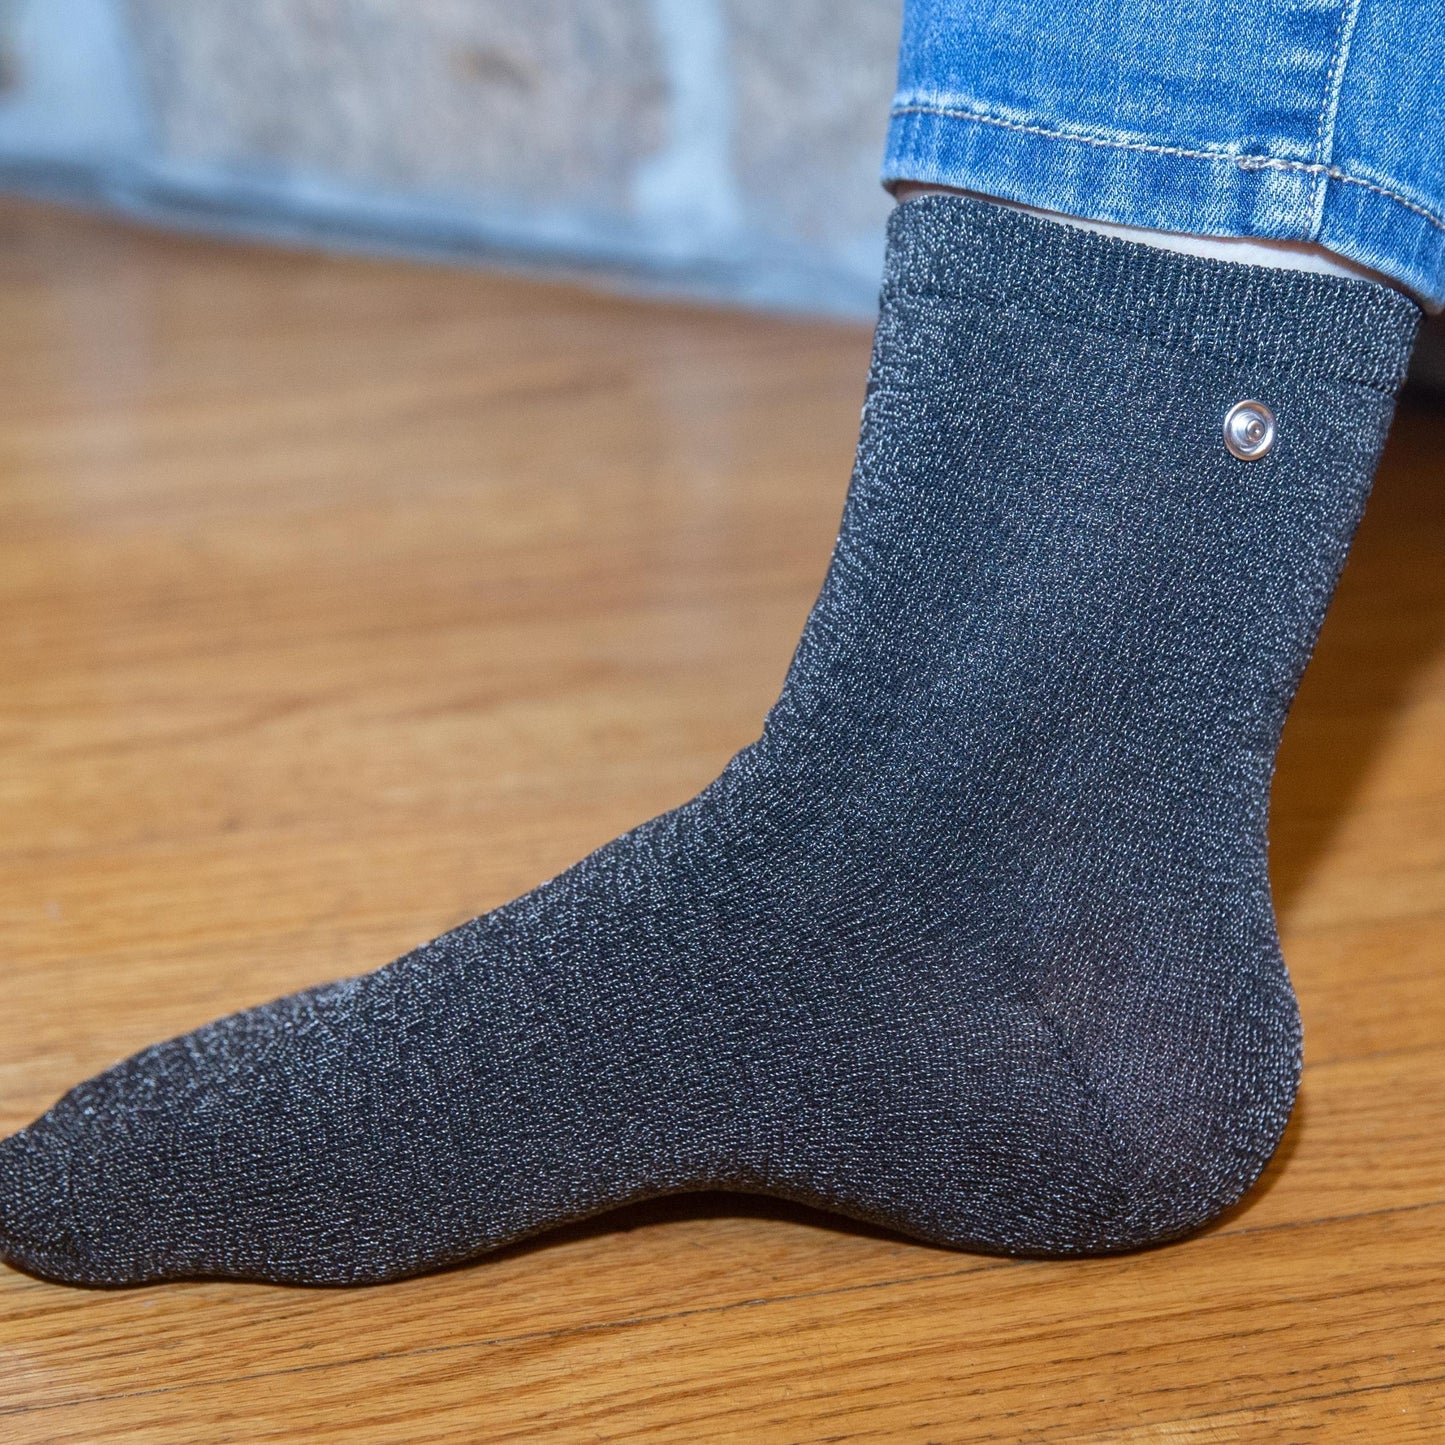 Grounded Socks Kit